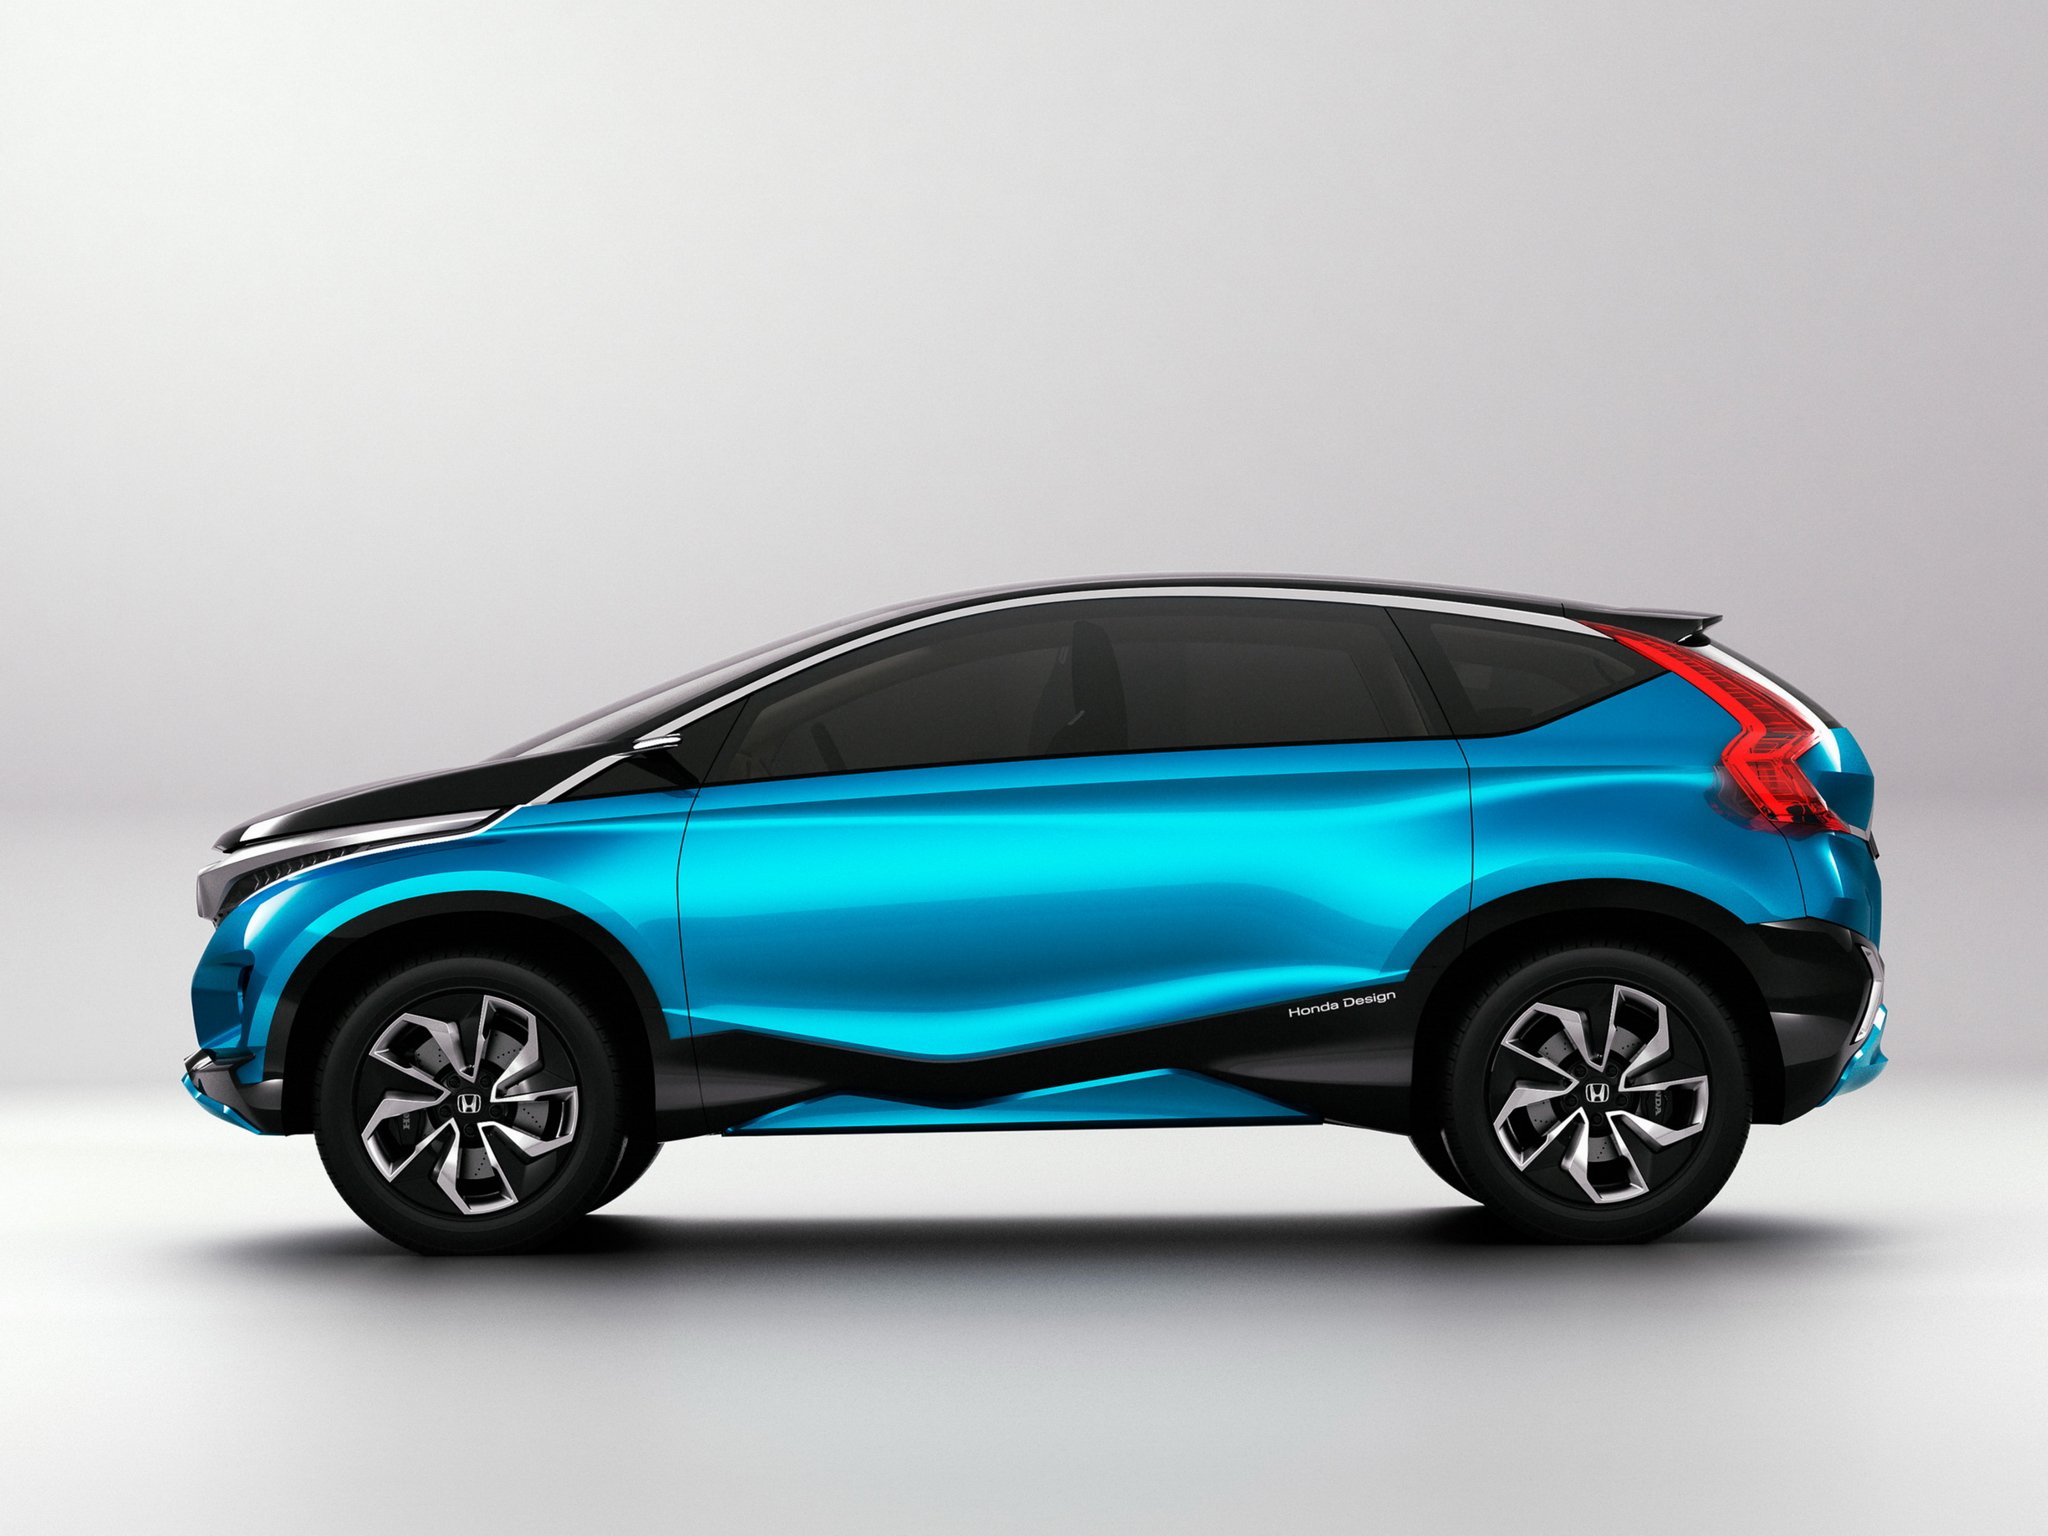 2014, Honda, Vision, Xs 1, Concept, Van Wallpaper